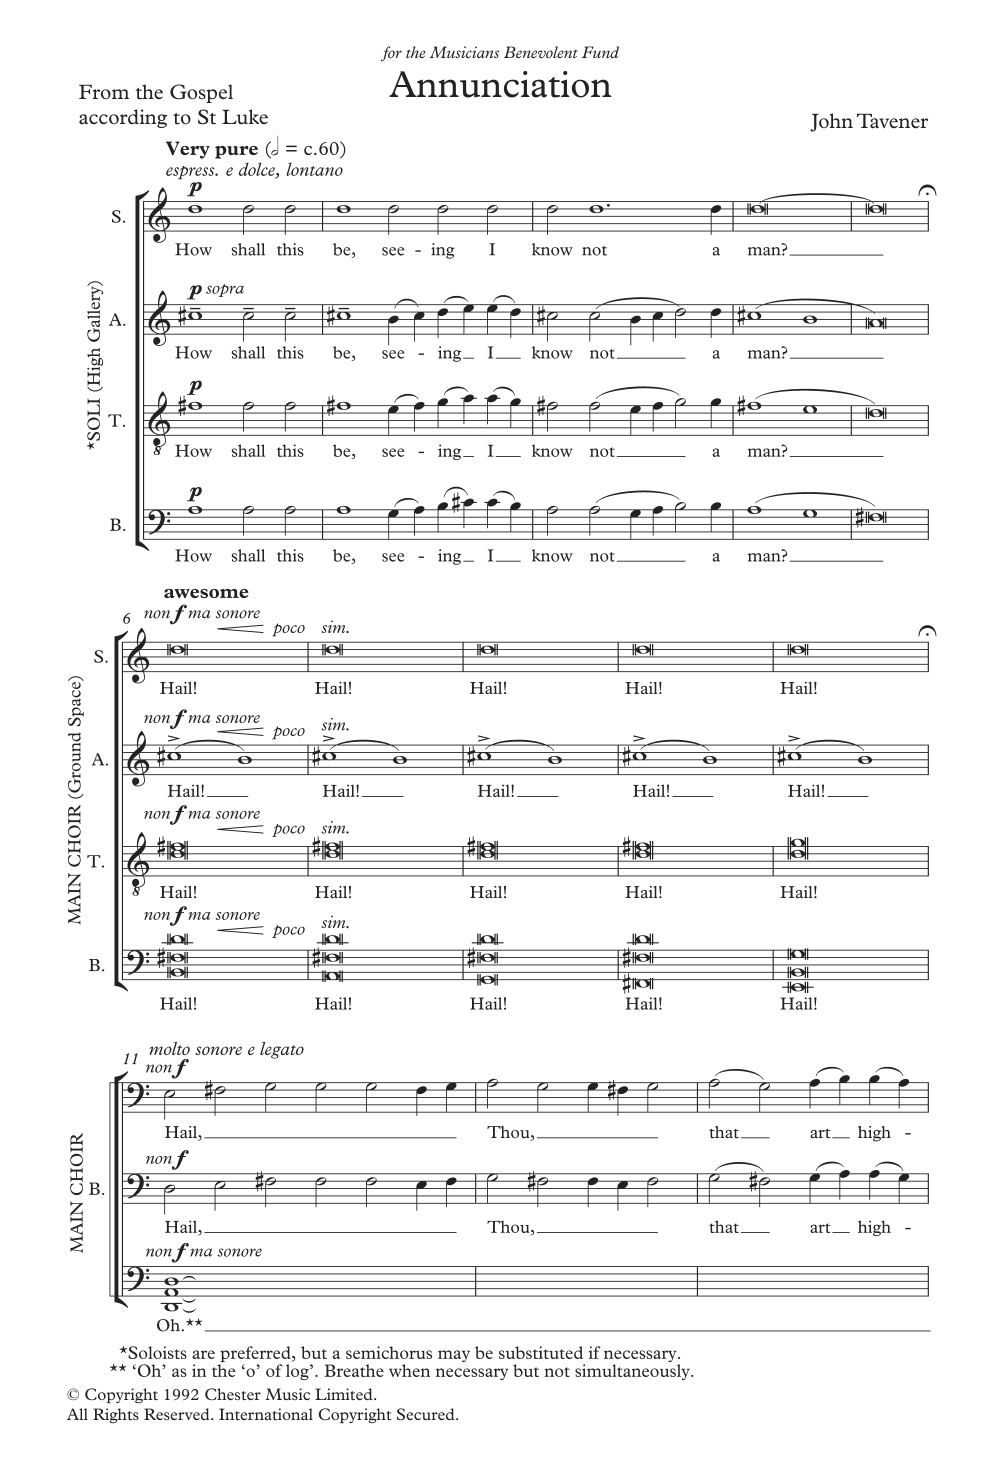 John Tavener Annunciation Sheet Music Notes & Chords for SATB Choir - Download or Print PDF